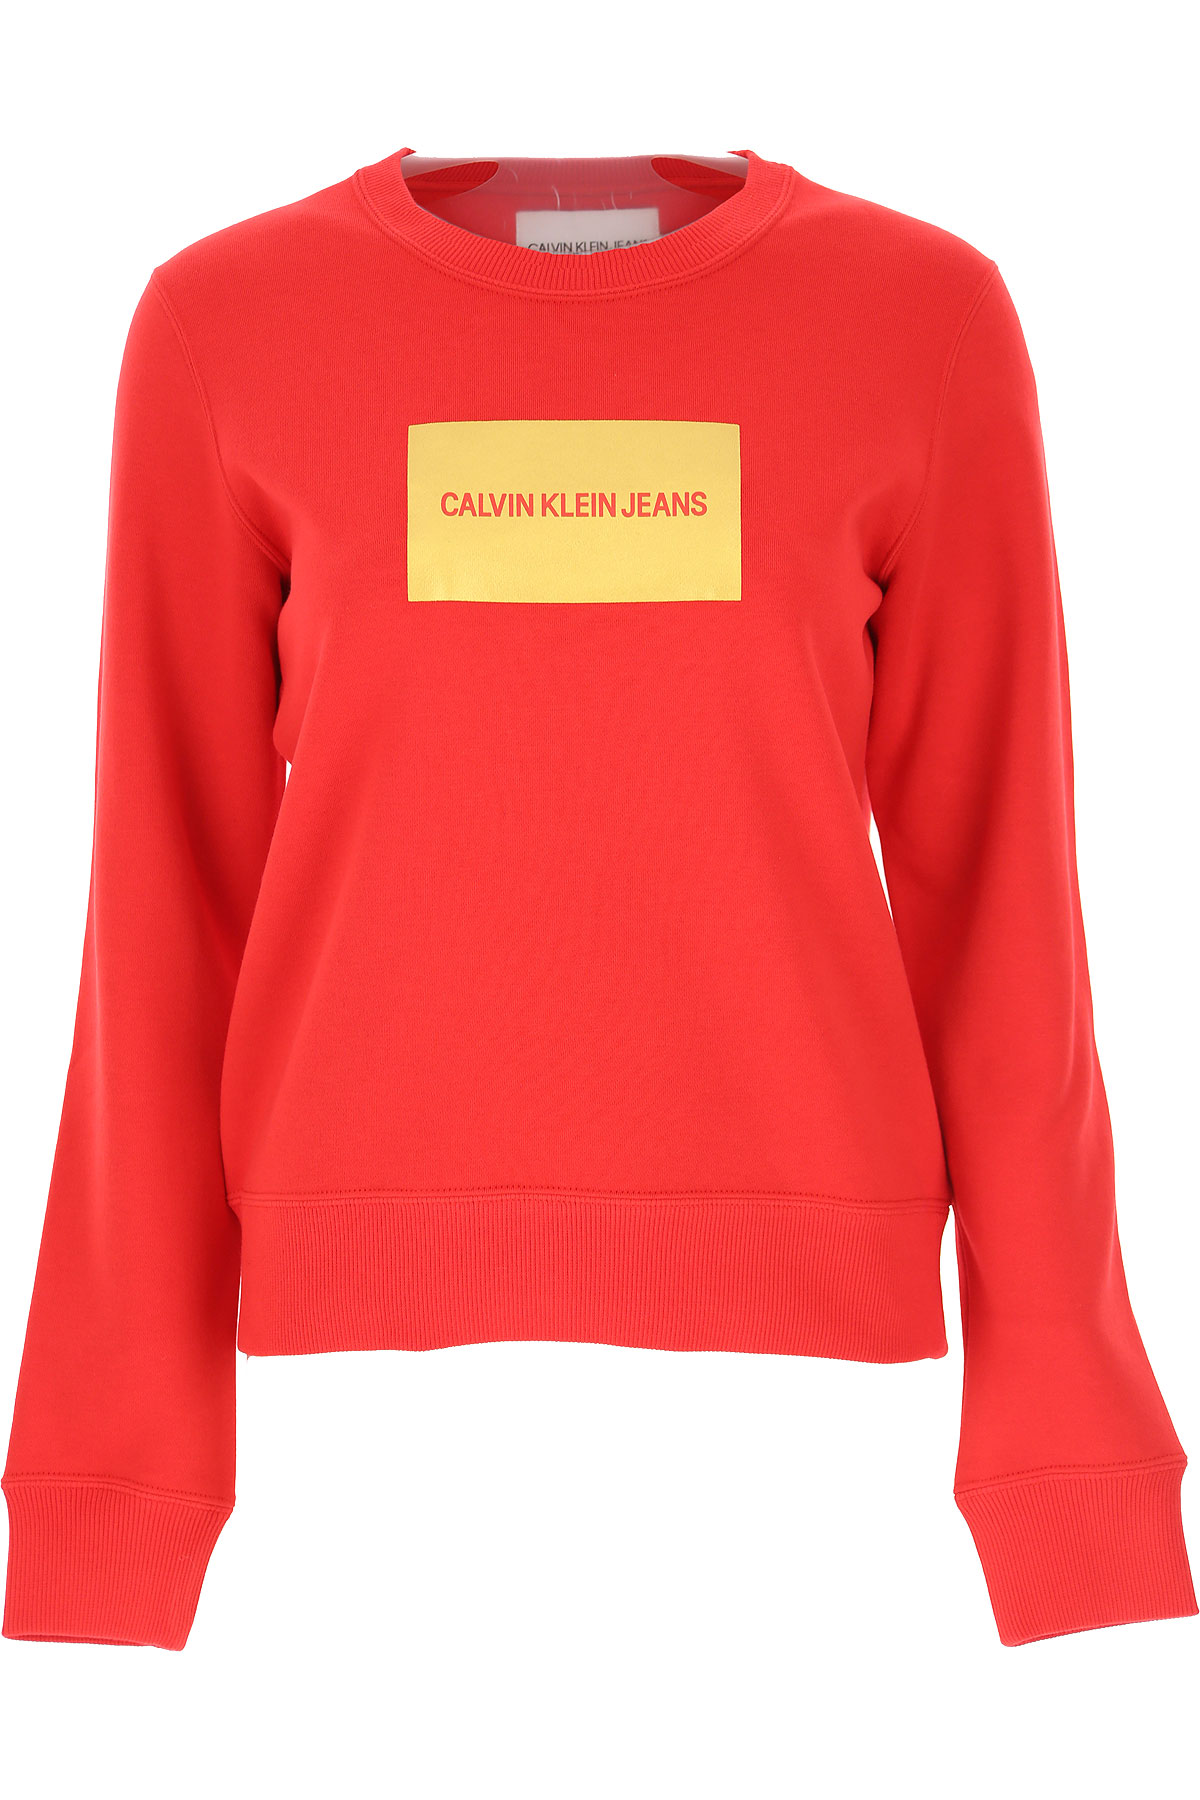 Calvin Klein Sweatshirt für Damen, Kapuzenpulli, Hoodie, Sweats Günstig im Sale, Rot, Baumwolle, 2017, 40 44